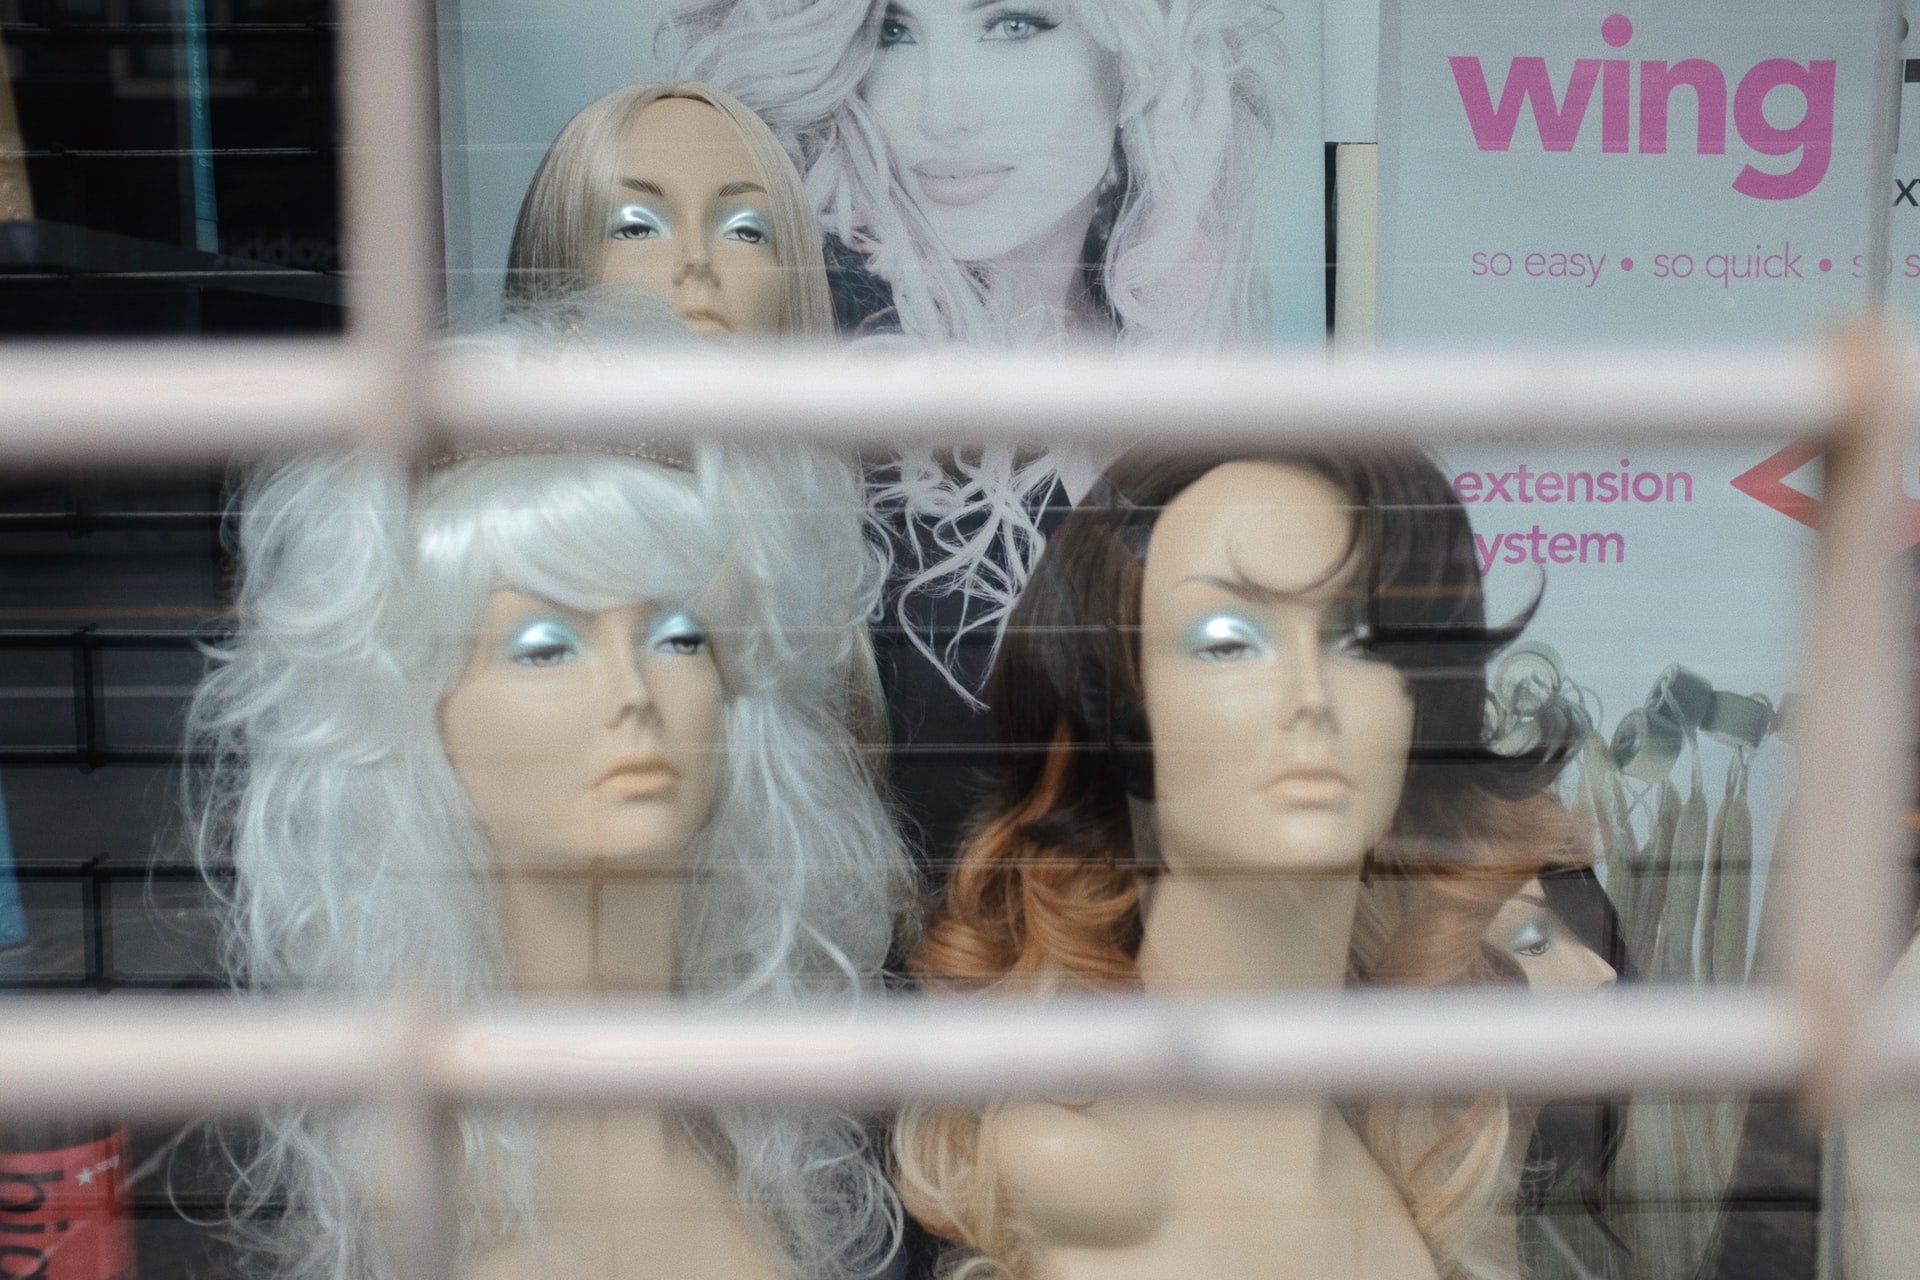 Mannequins wearing wigs | Source: Unsplash